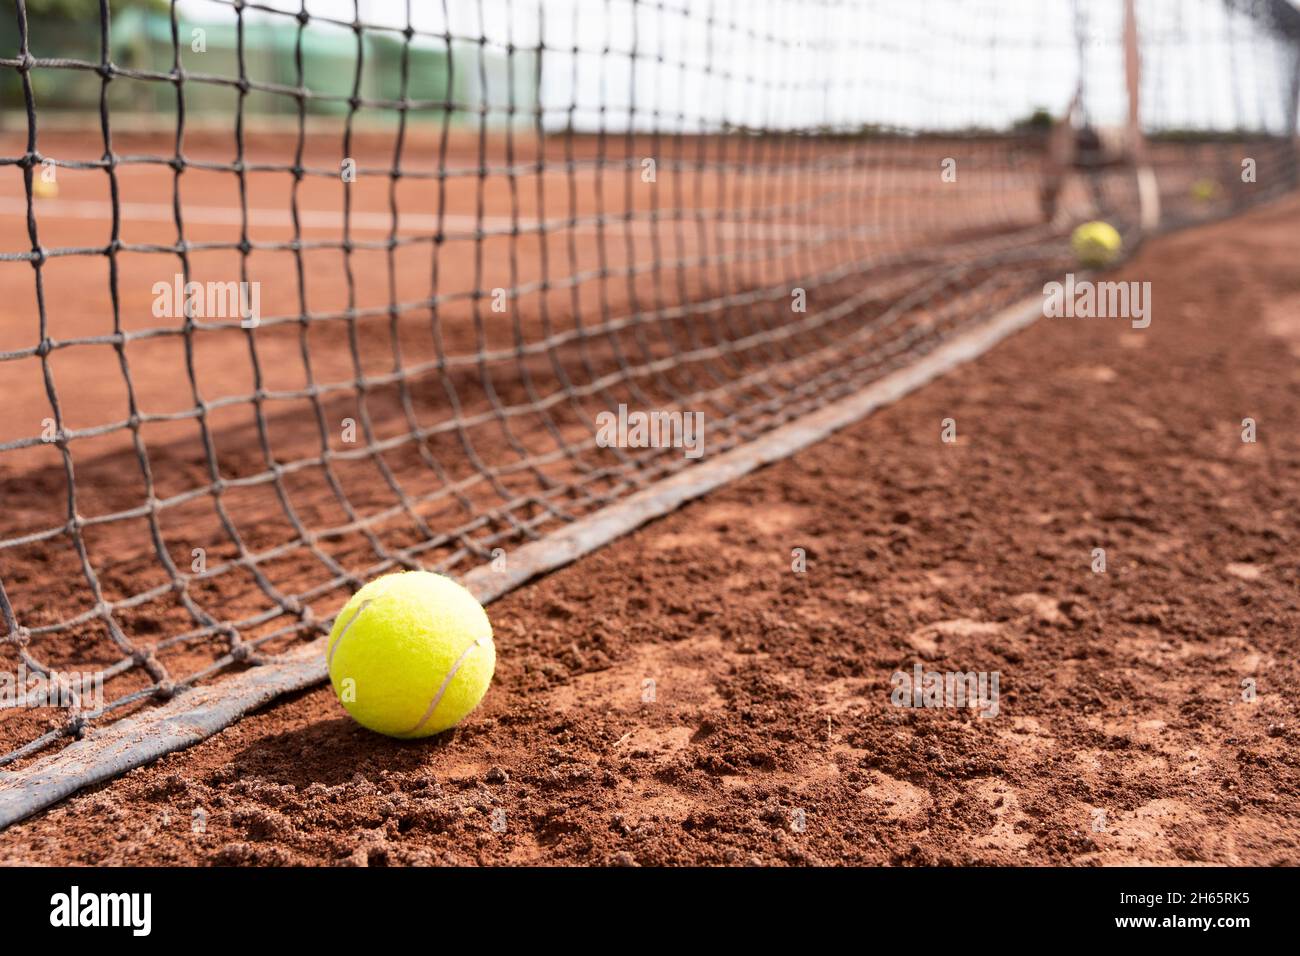 Nahaufnahme des Tennisballs auf dem nassen Sandplatz in der Nähe des Netzes. Sporttraining, Turnierkonzepte Stockfoto